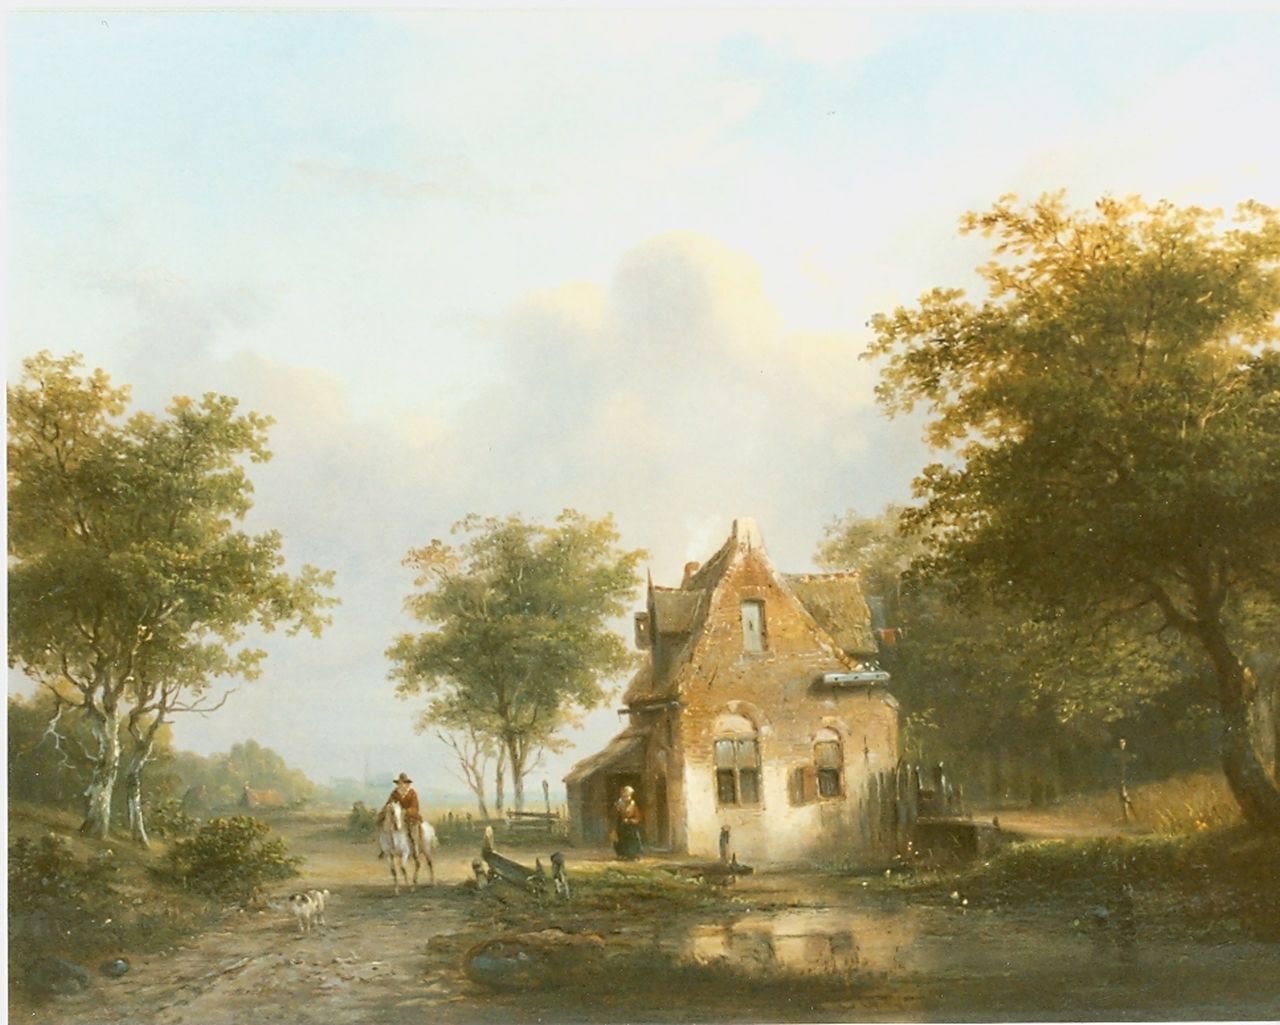 Stok J. van der | Jacobus van der Stok, A wooded landscape in summer, oil on panel 31.0 x 40.5 cm, signed m.o.